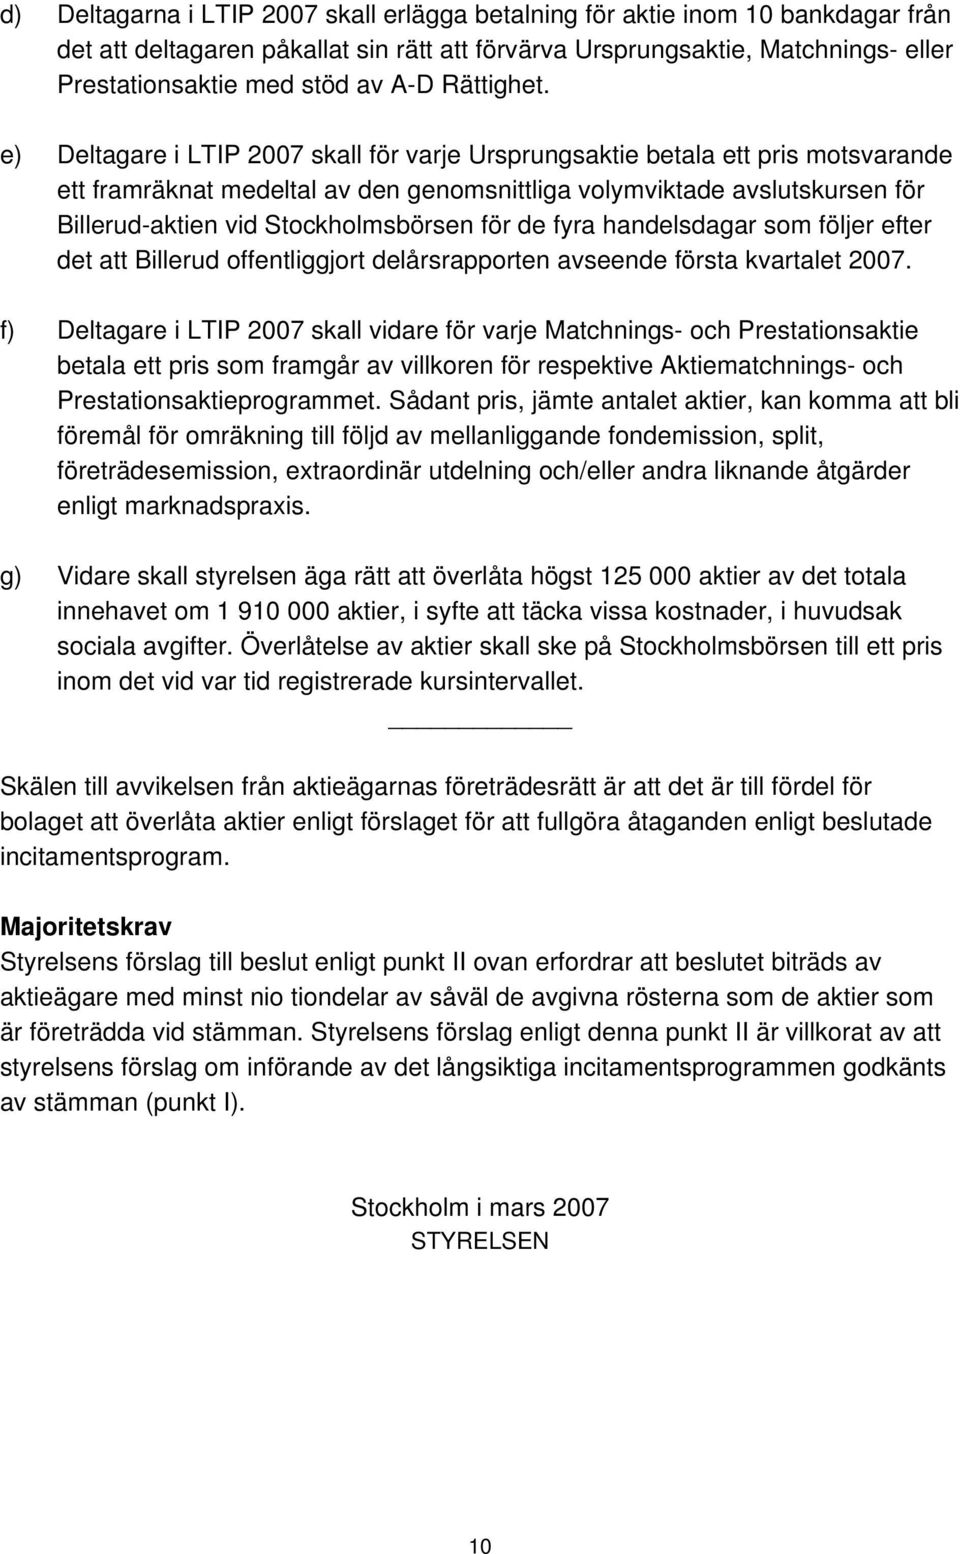 e) Deltagare i LTIP 2007 skall för varje Ursprungsaktie betala ett pris motsvarande ett framräknat medeltal av den genomsnittliga volymviktade avslutskursen för Billerud-aktien vid Stockholmsbörsen